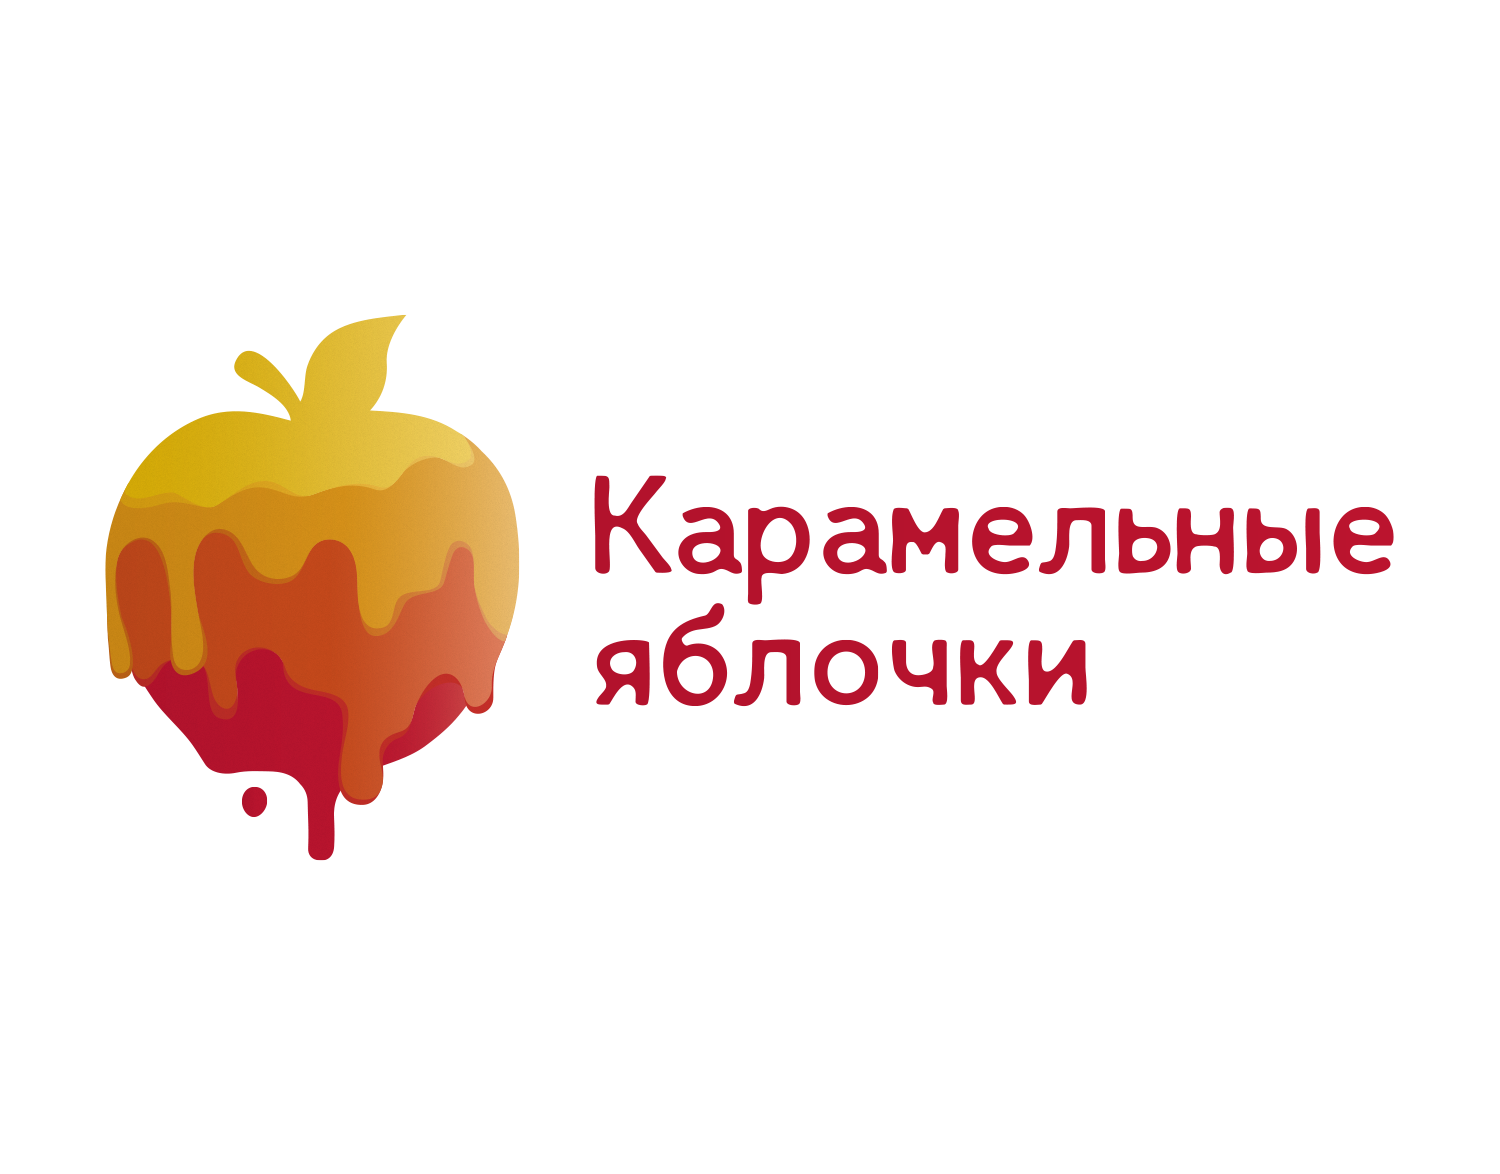 Бизон карамельное яблоко. Карамельное яблоко. Логотип для карамельного яблока. Яблоки в карамели реклама. Карамельные яблочки баннер.